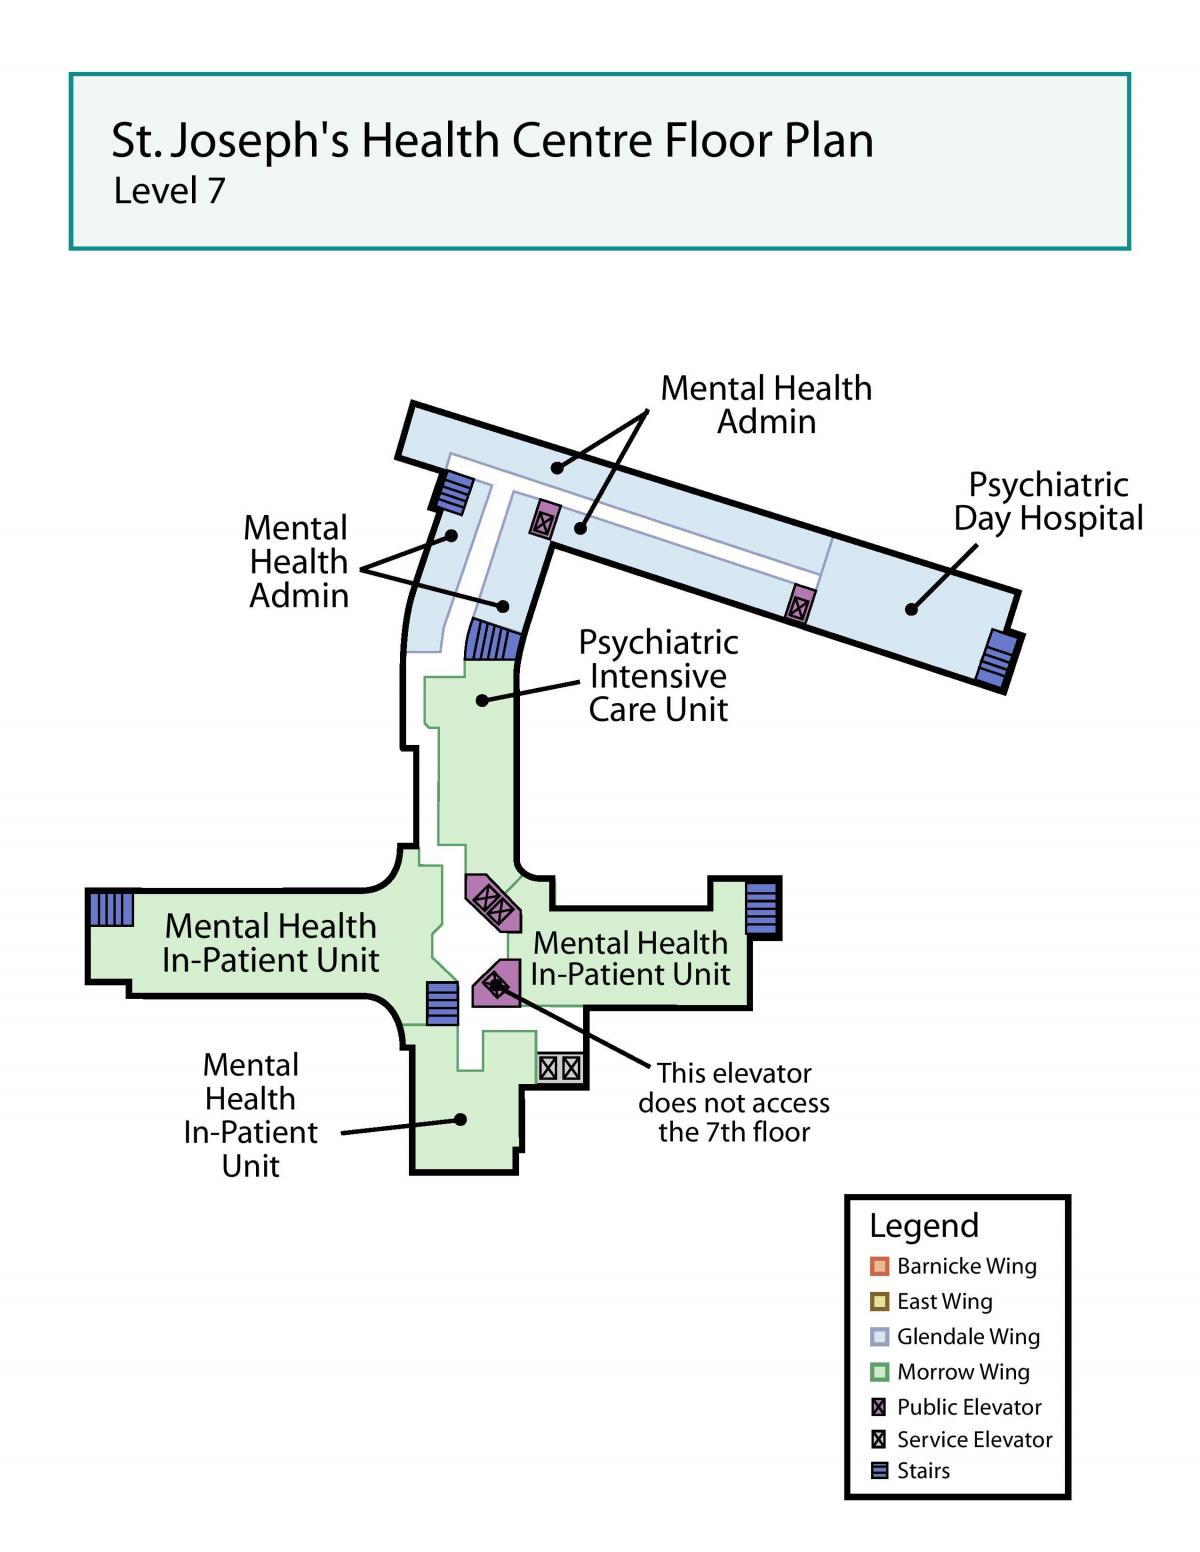 Harta e Shën Jozefit në qendrën Shëndetësore të Torontos nivelin e 7-të